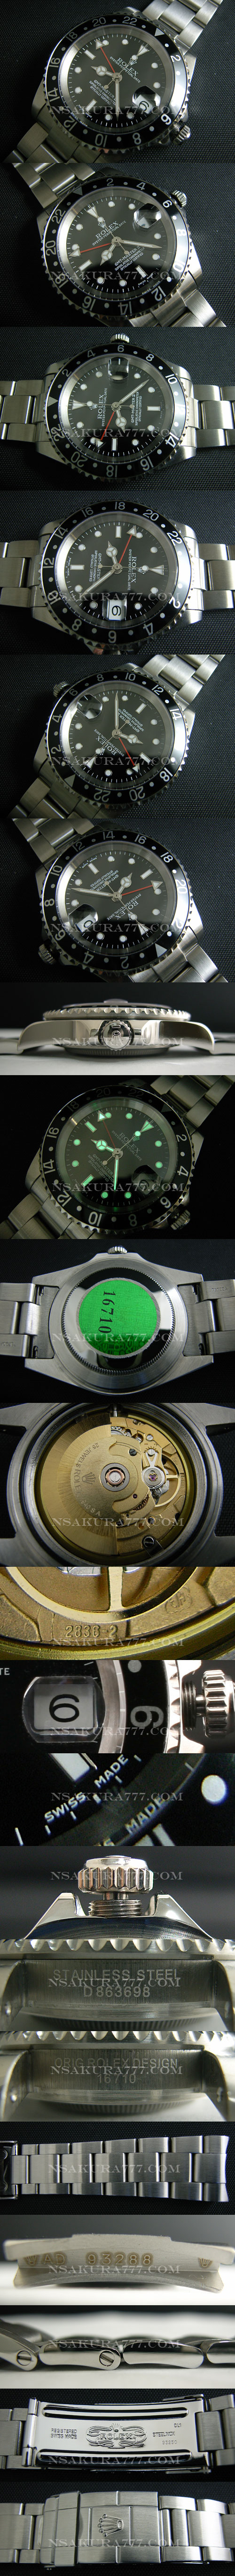 レプリカ時計ロレックス GMT2836-2ムーブ搭載 GMT針単独調整可能 - ウインドウを閉じる